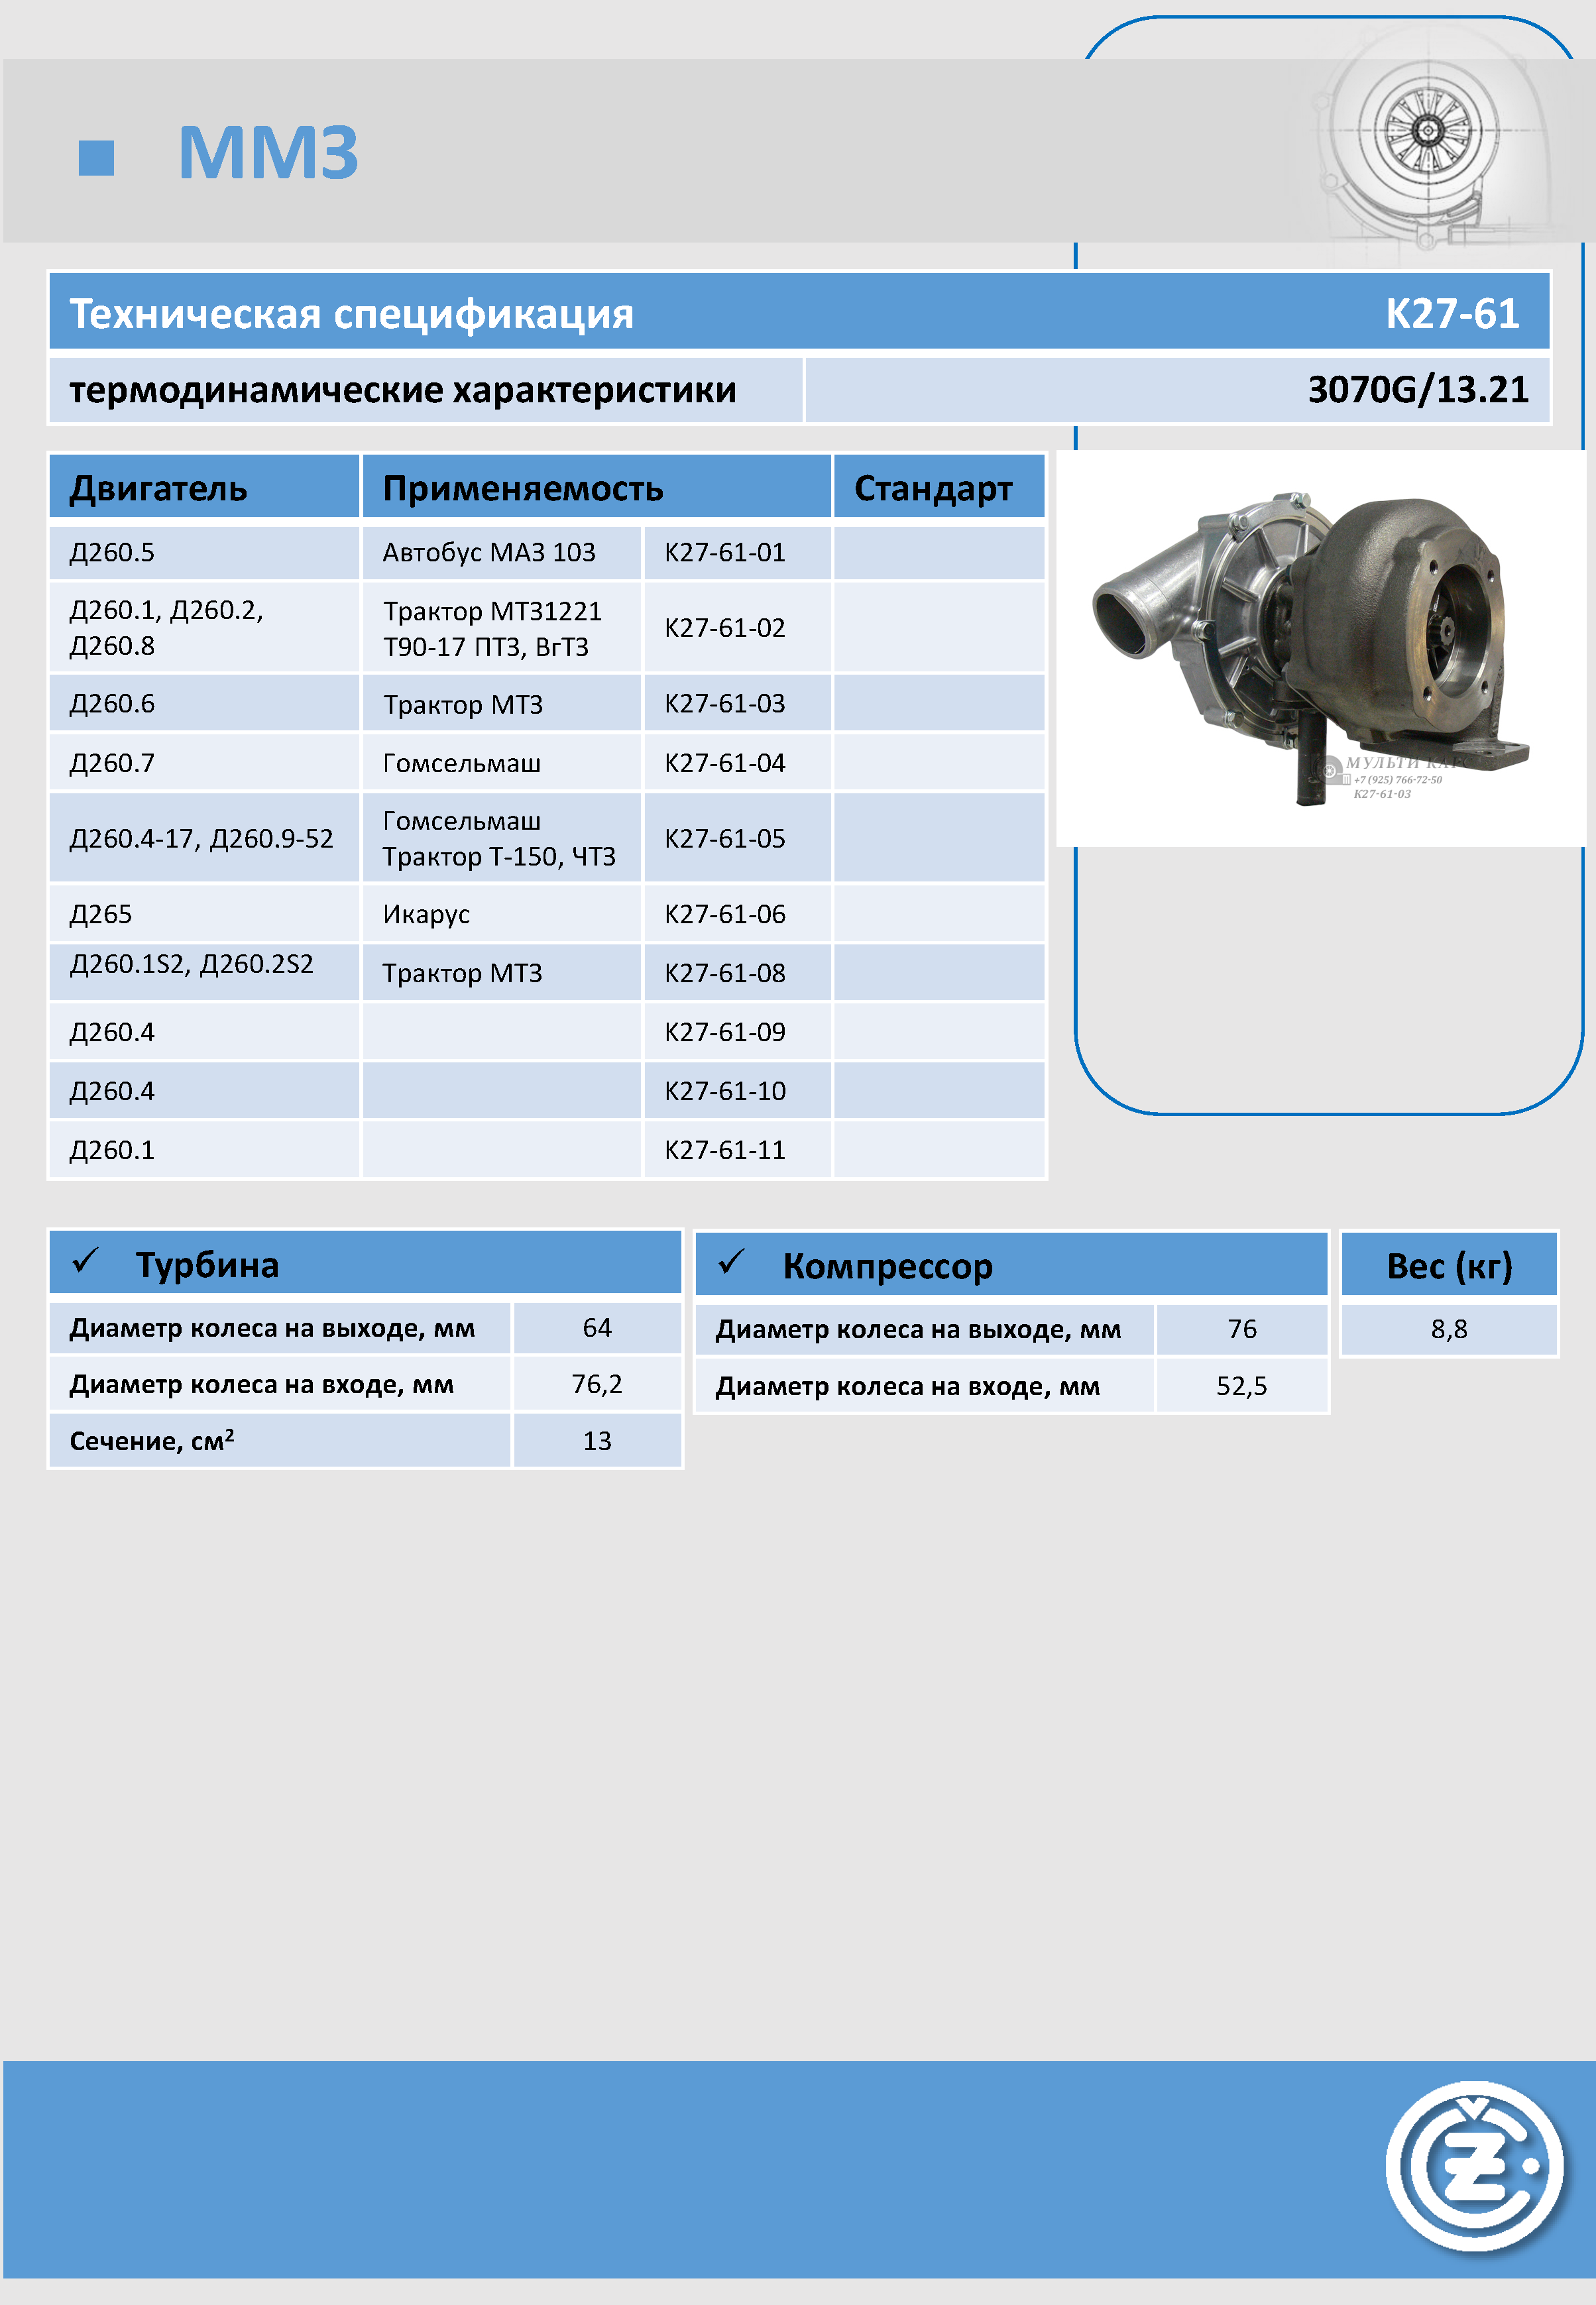 Модель турбокомпрессора: К27-61-03